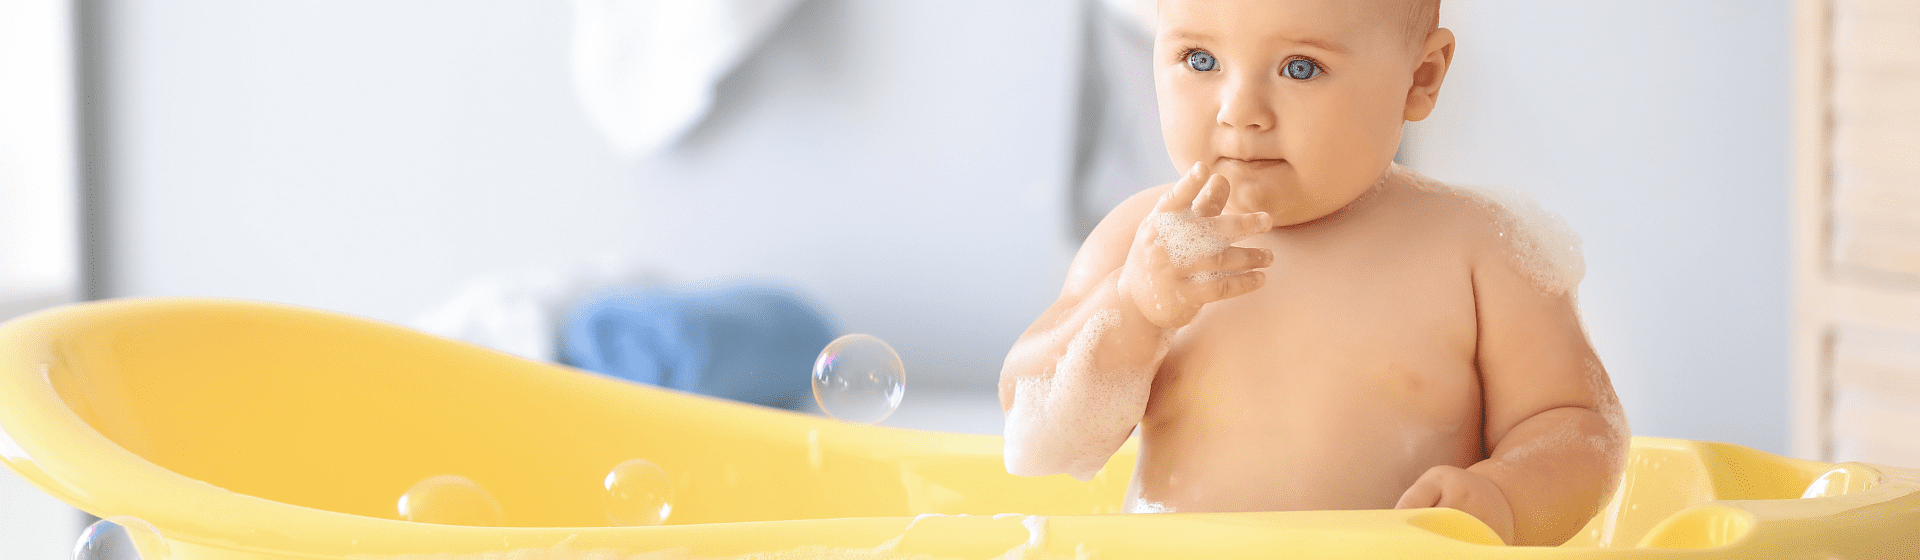 Banheira de bebê: como usar a banheira de bebê?